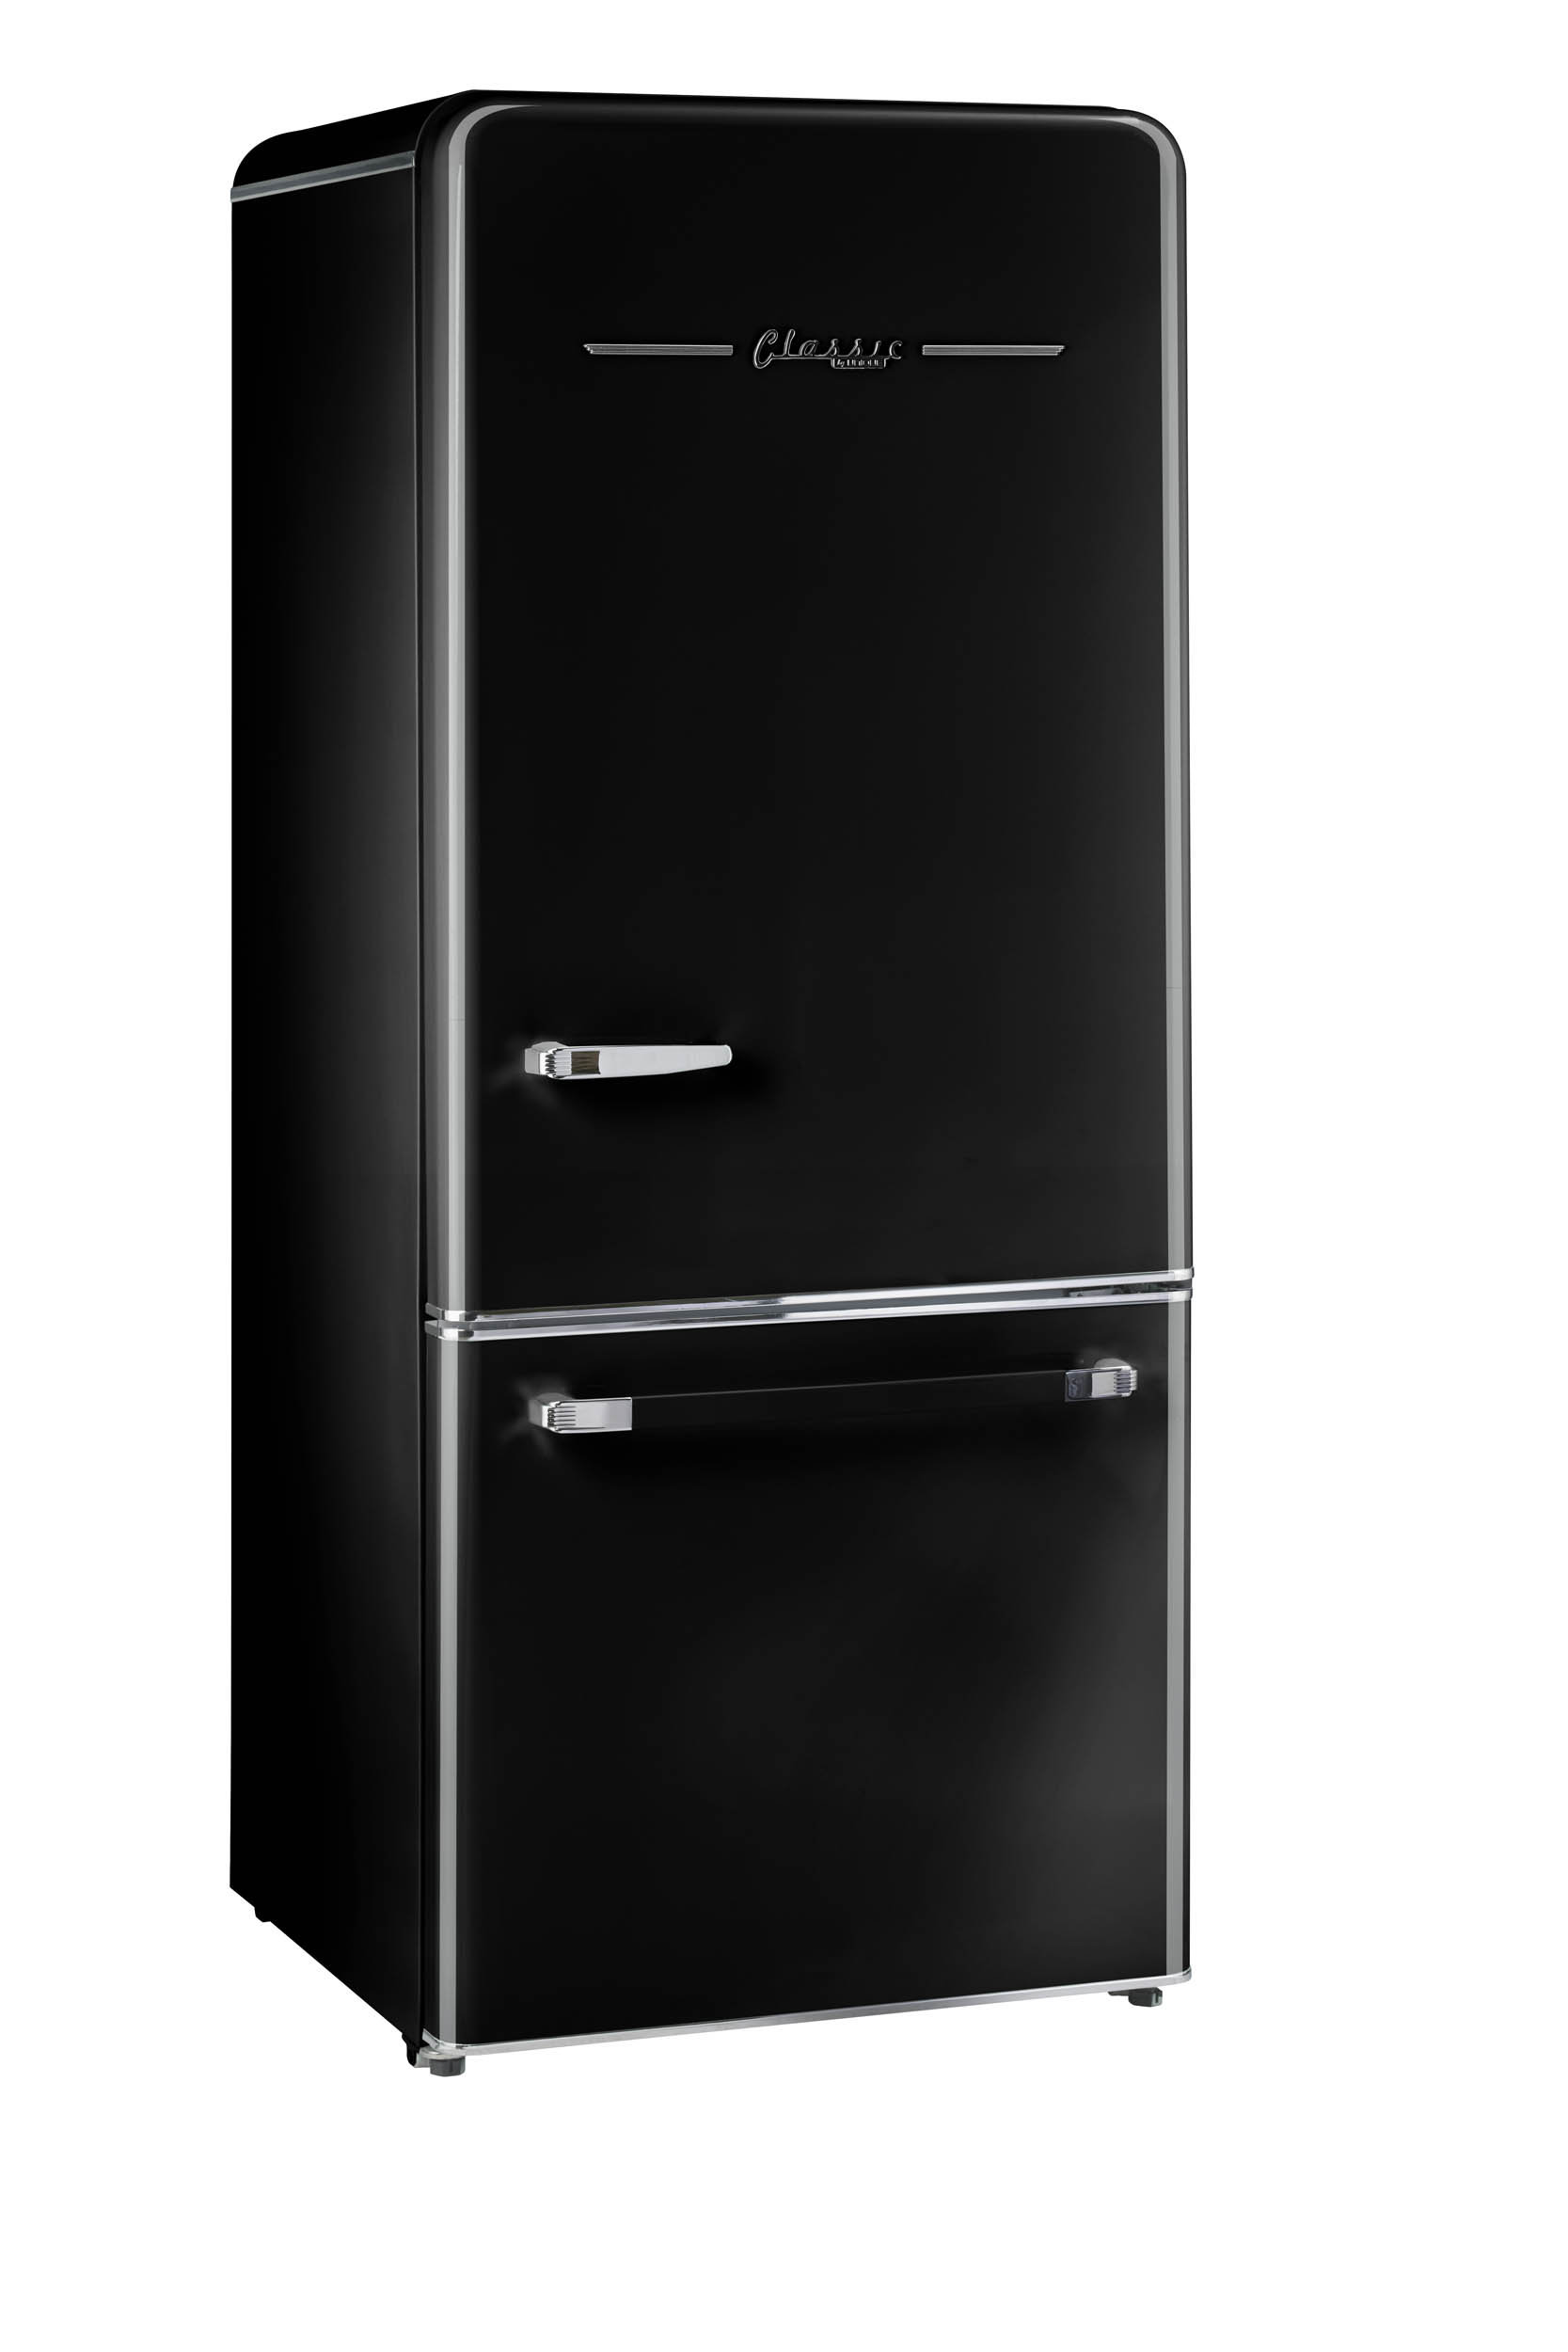 Galanz Galanz réfrigérateur à congélateur inférieur rétro de 7,4